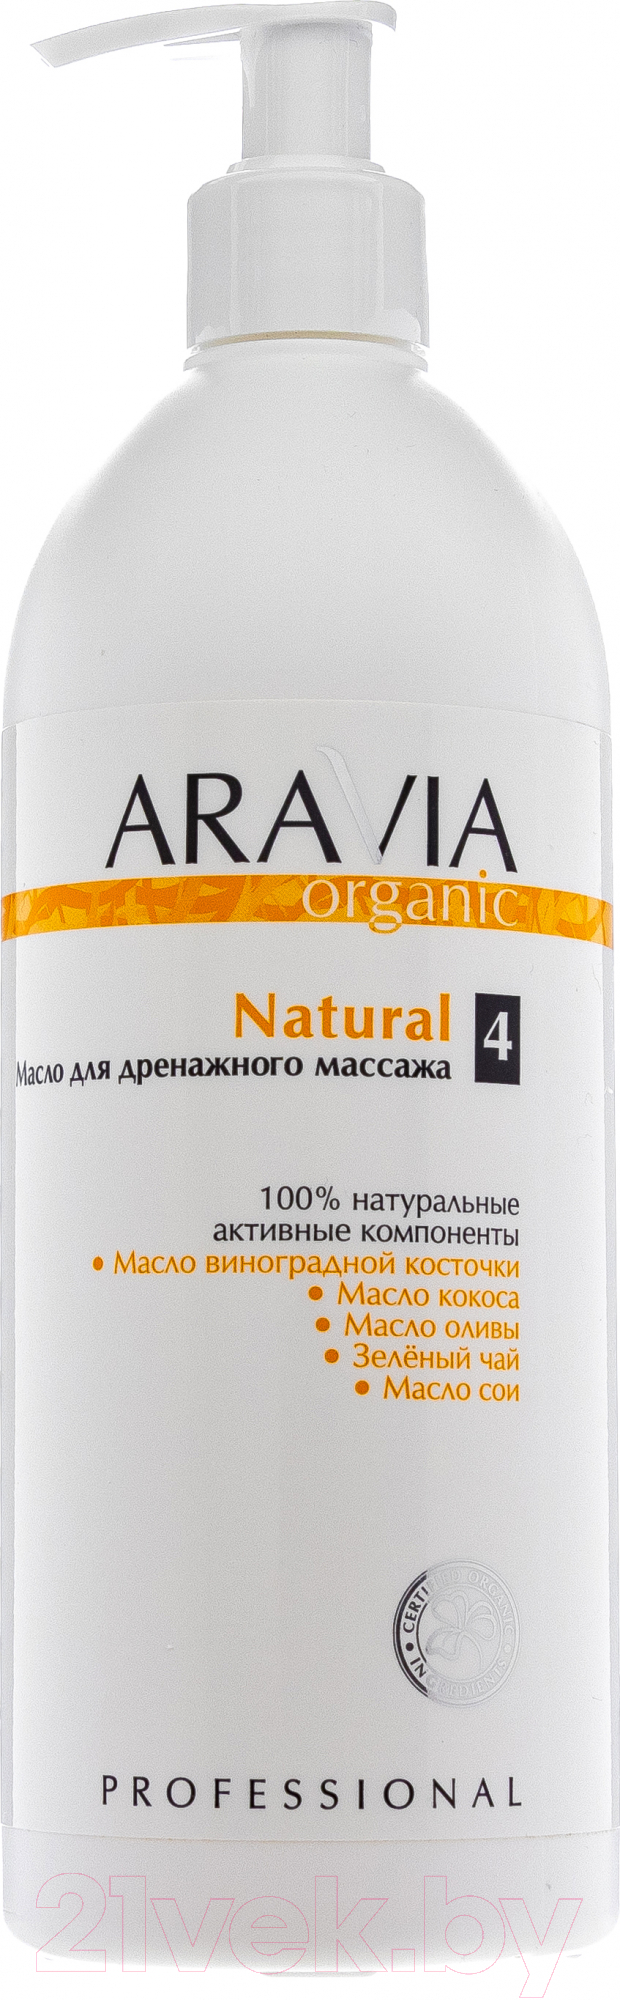 Масло косметическое Aravia Organic Natural для дренажного массажа (500мл)